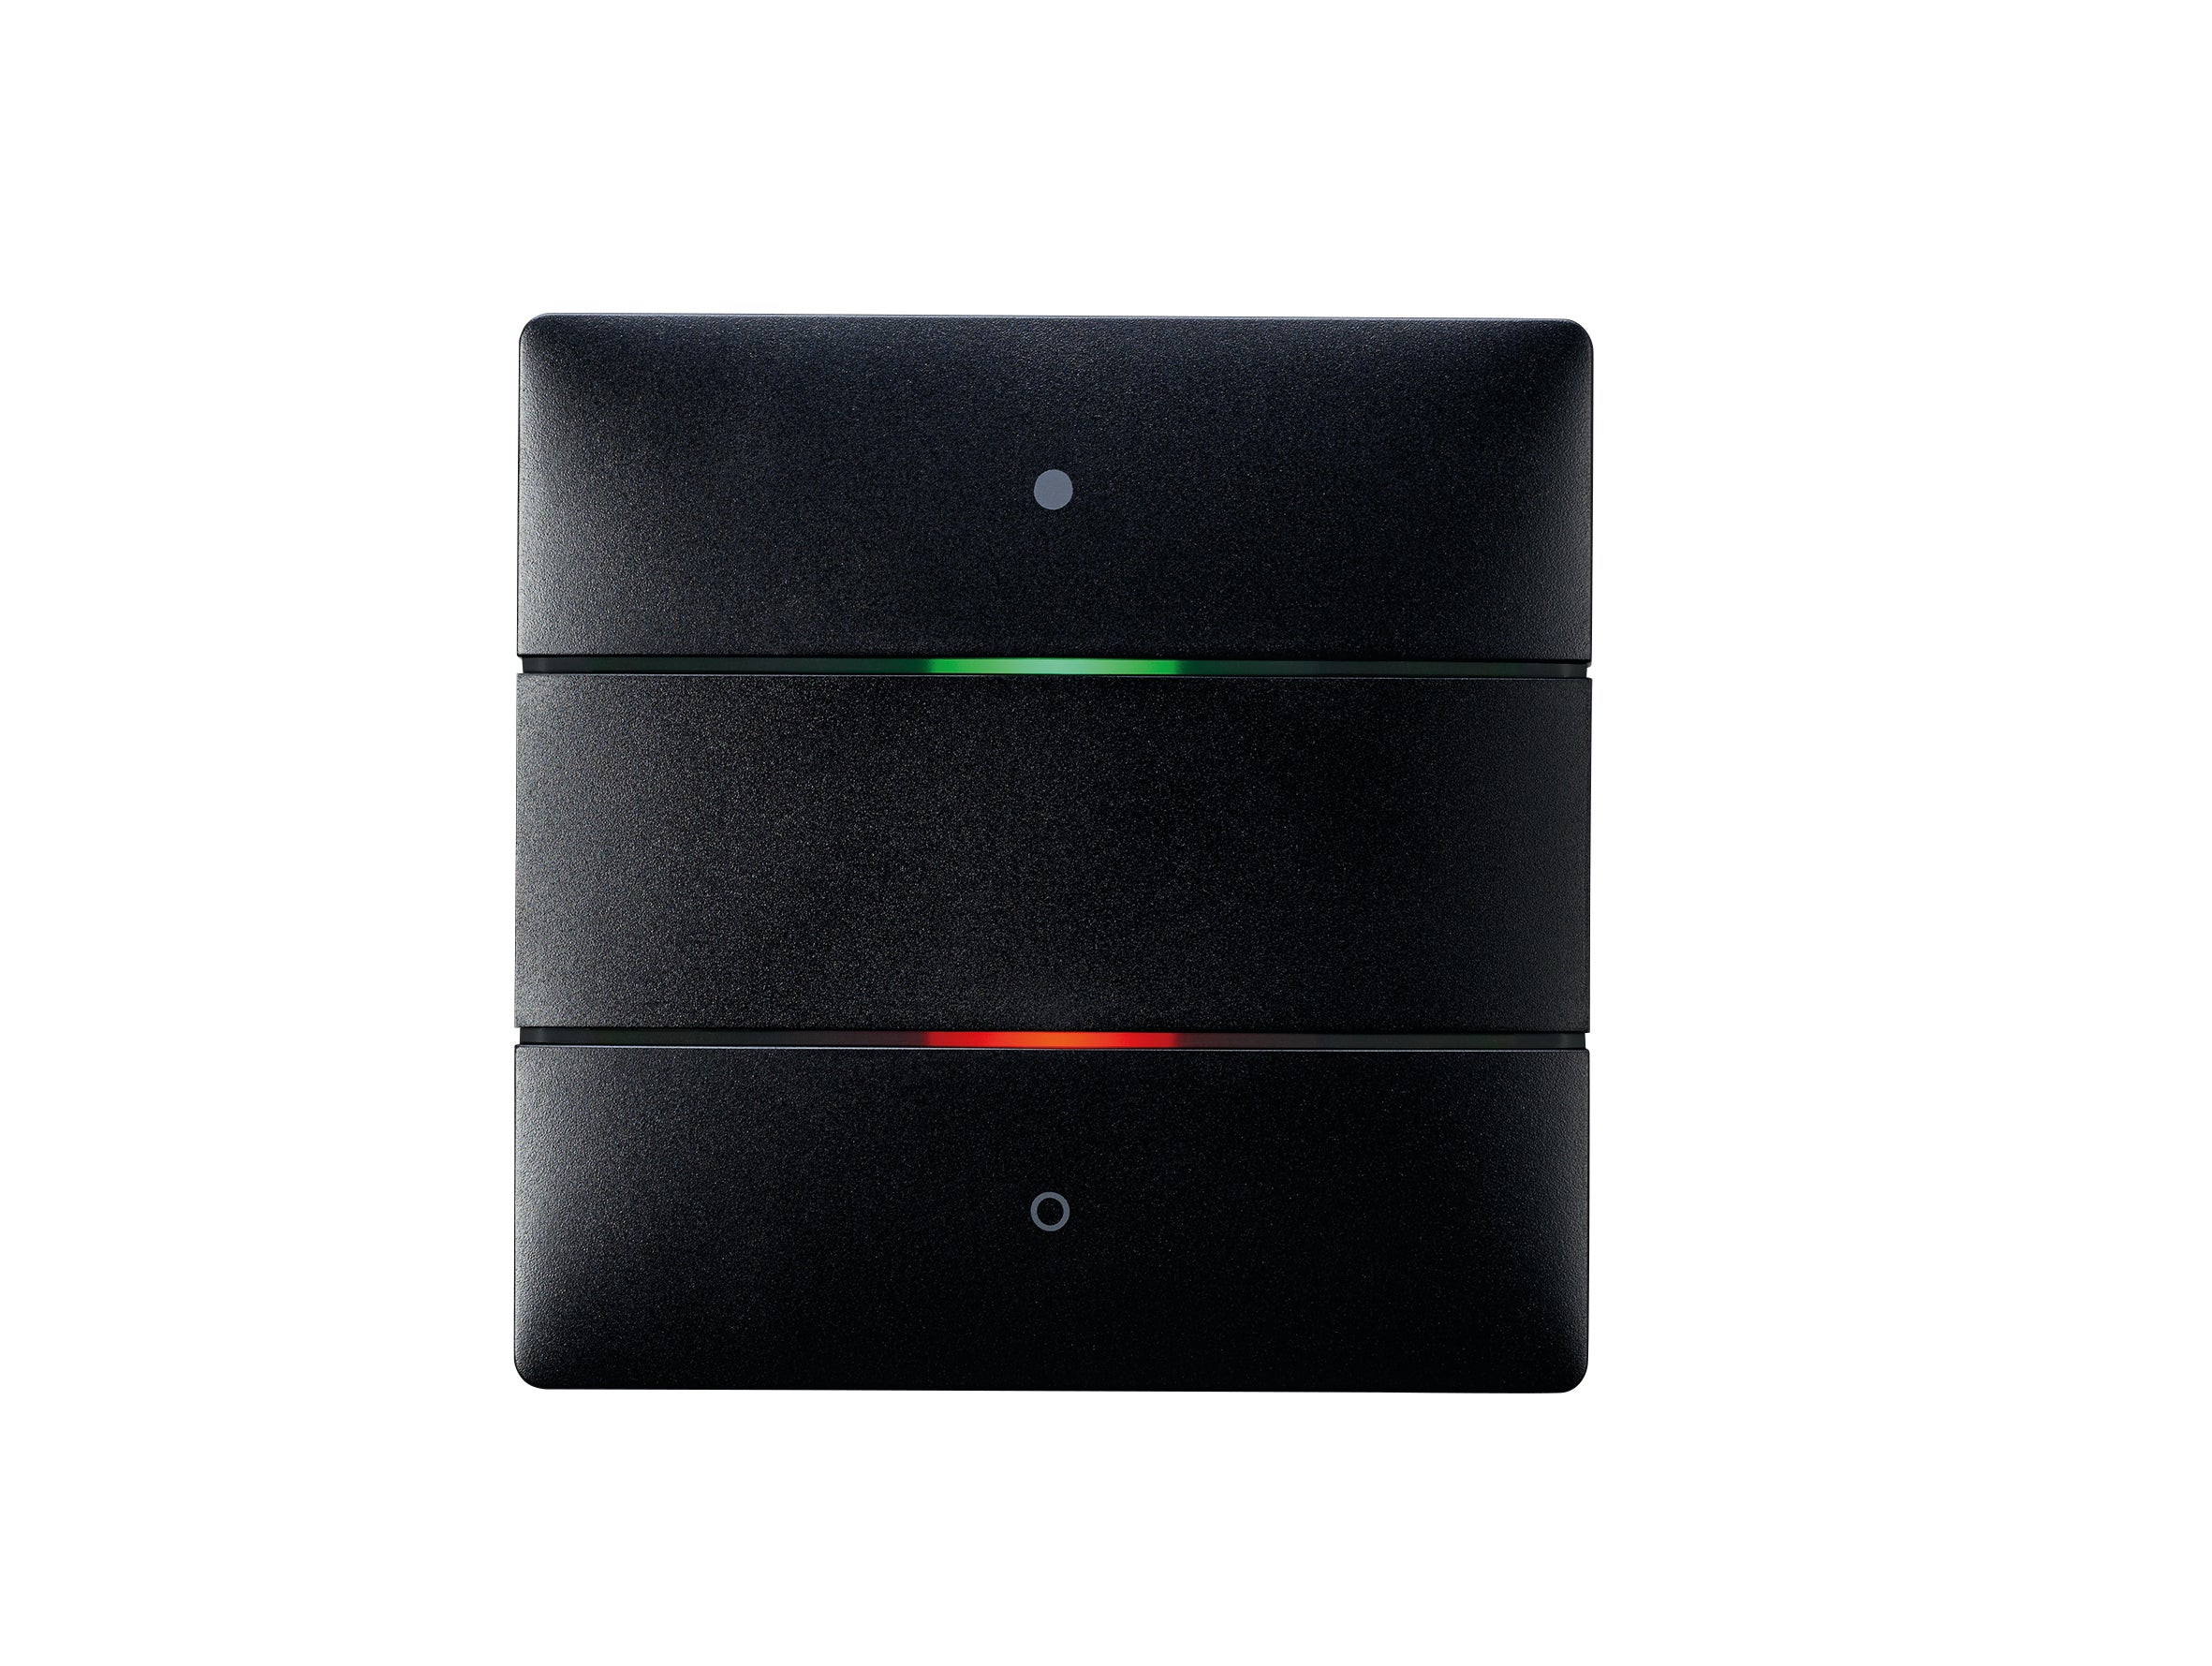 THEBEN KNX-Tastsensor mit 2 Tasten und 2 Status-LEDs, integrierter Temperatursensor, KNX Data Secure, Farbe schwarz